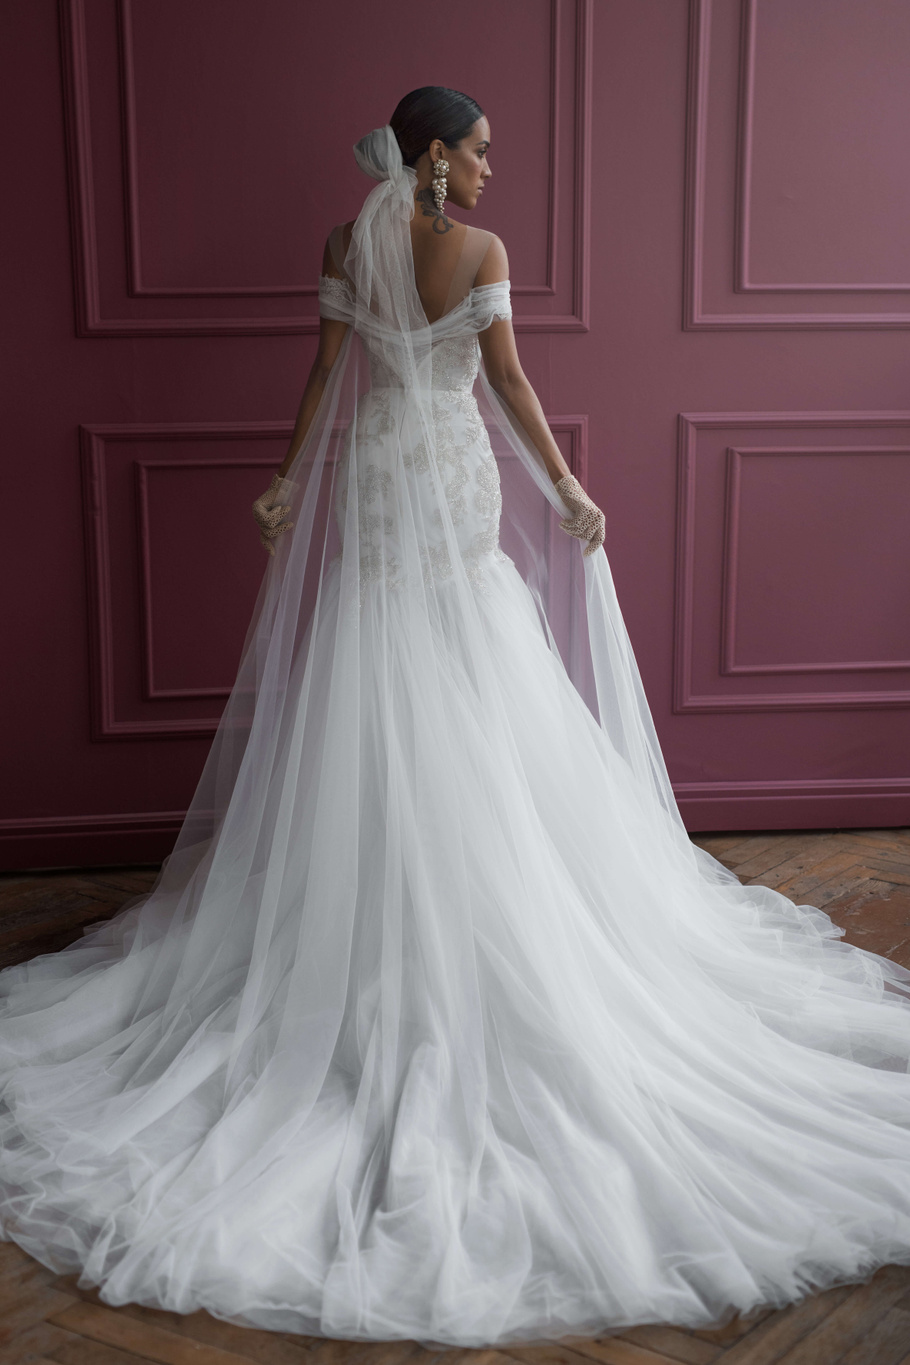 Купить свадебное платье «Ренет» Бламмо Биамо из коллекции Нимфа 2020 года в Санкт-Петербурге